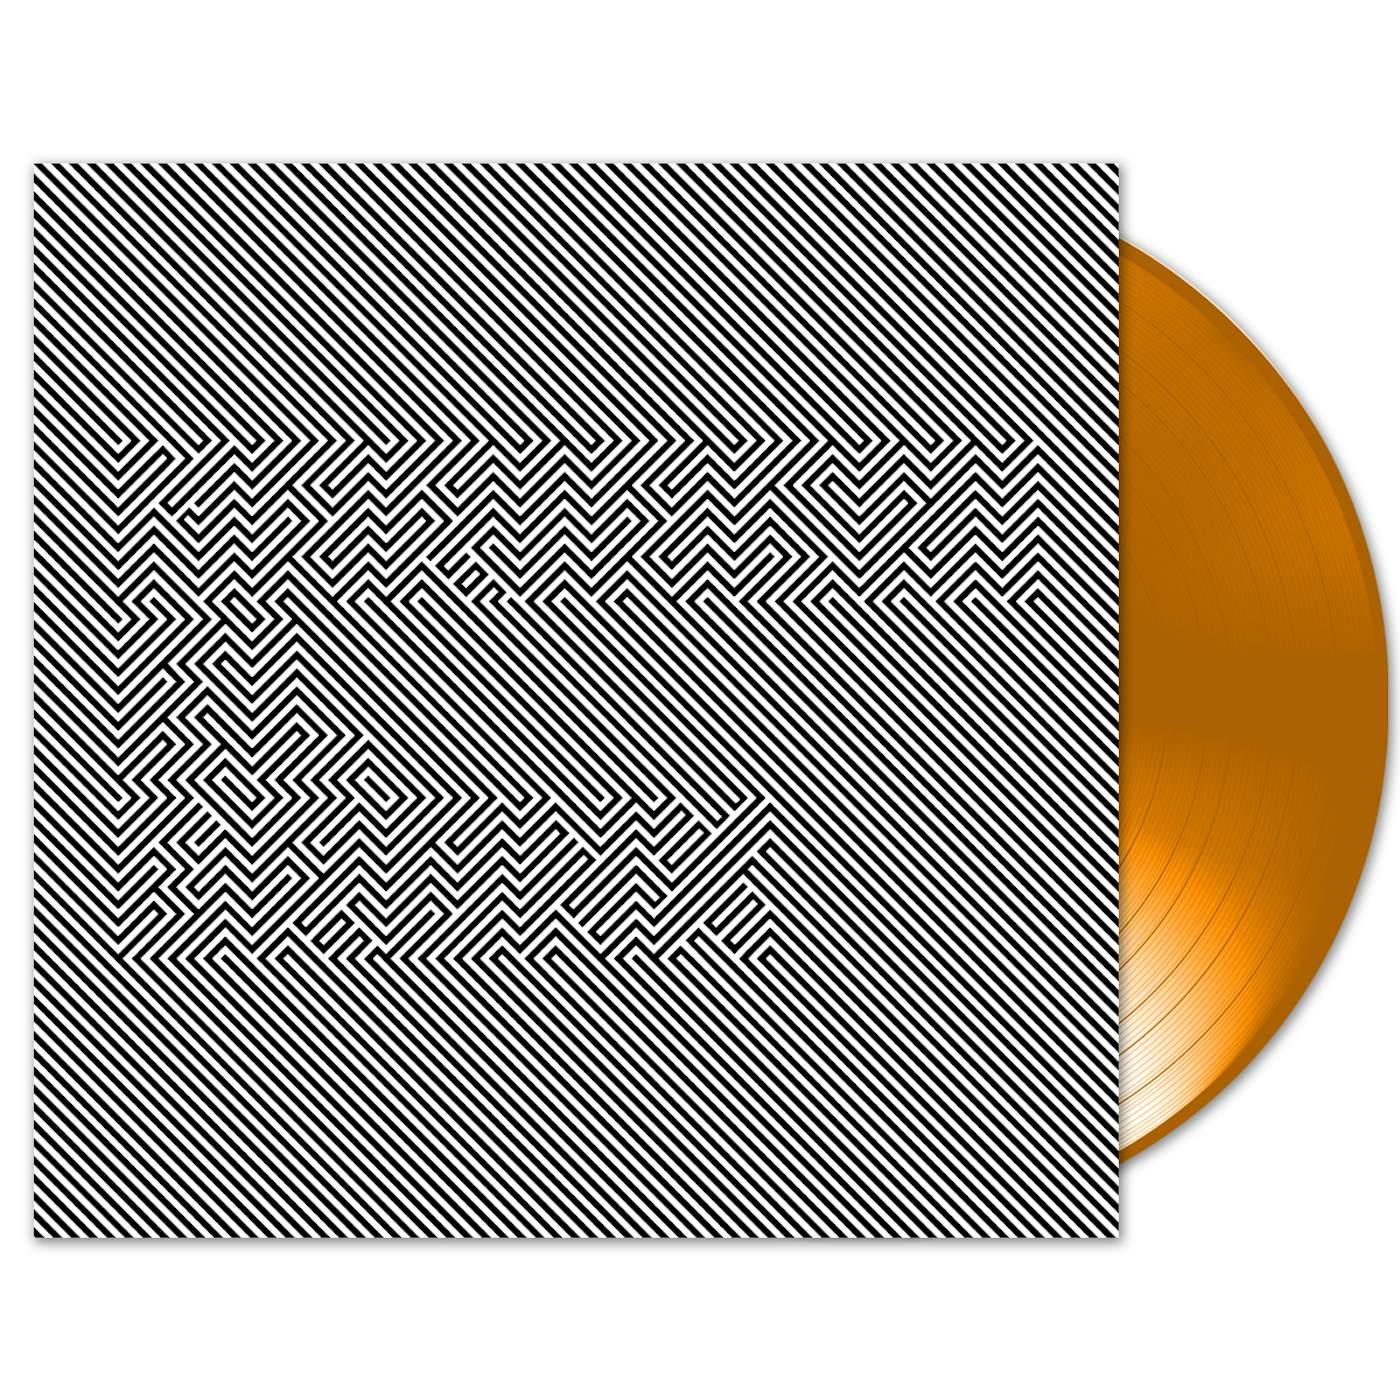 Mariachi El Bronx – Mariachi El Bronx (III) LP - Orange Day-Glo Vinyl